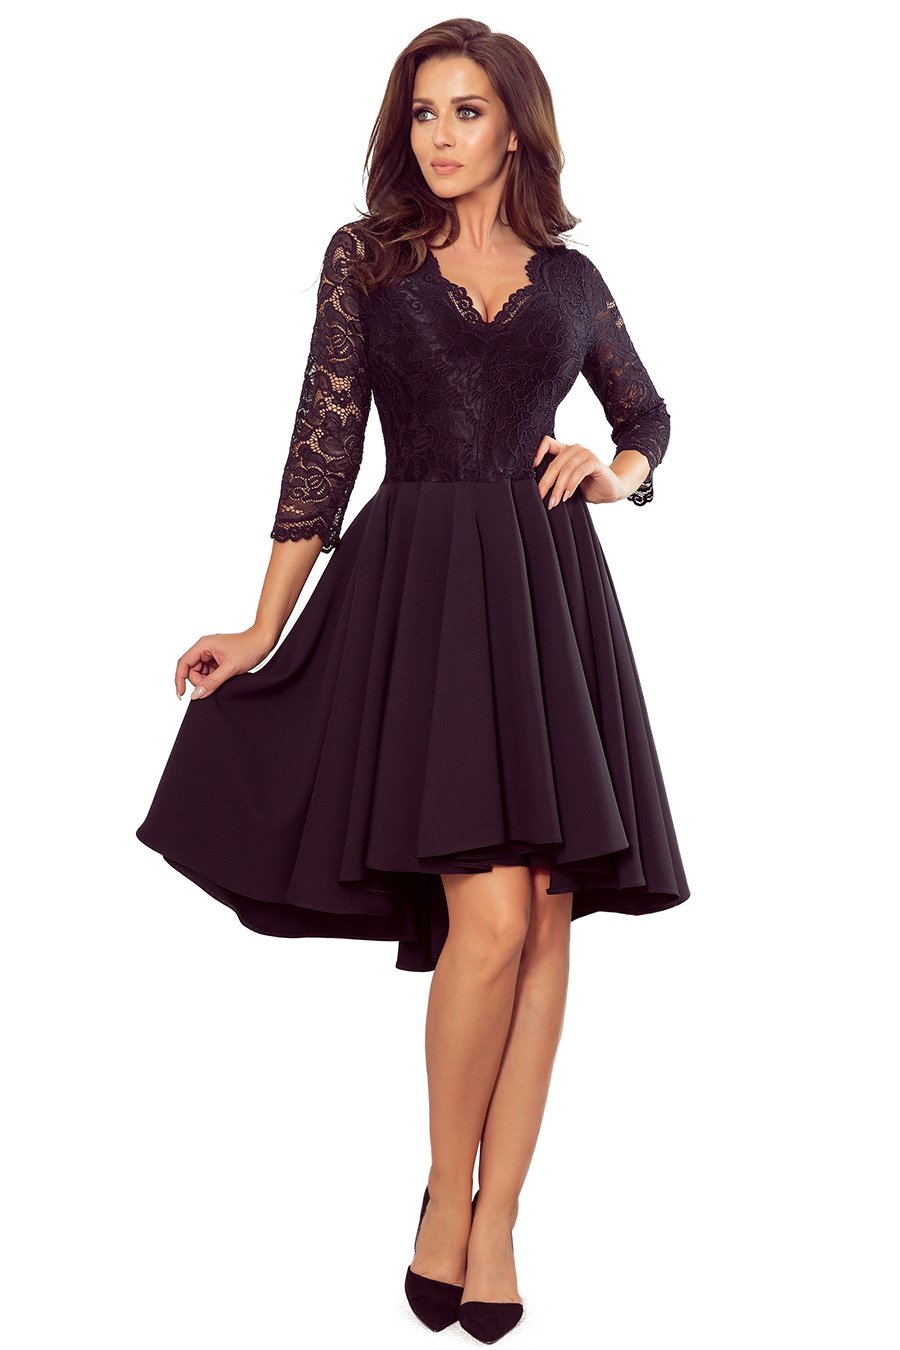 Γυναικείο φόρεμα Dottie, Μαύρο 1